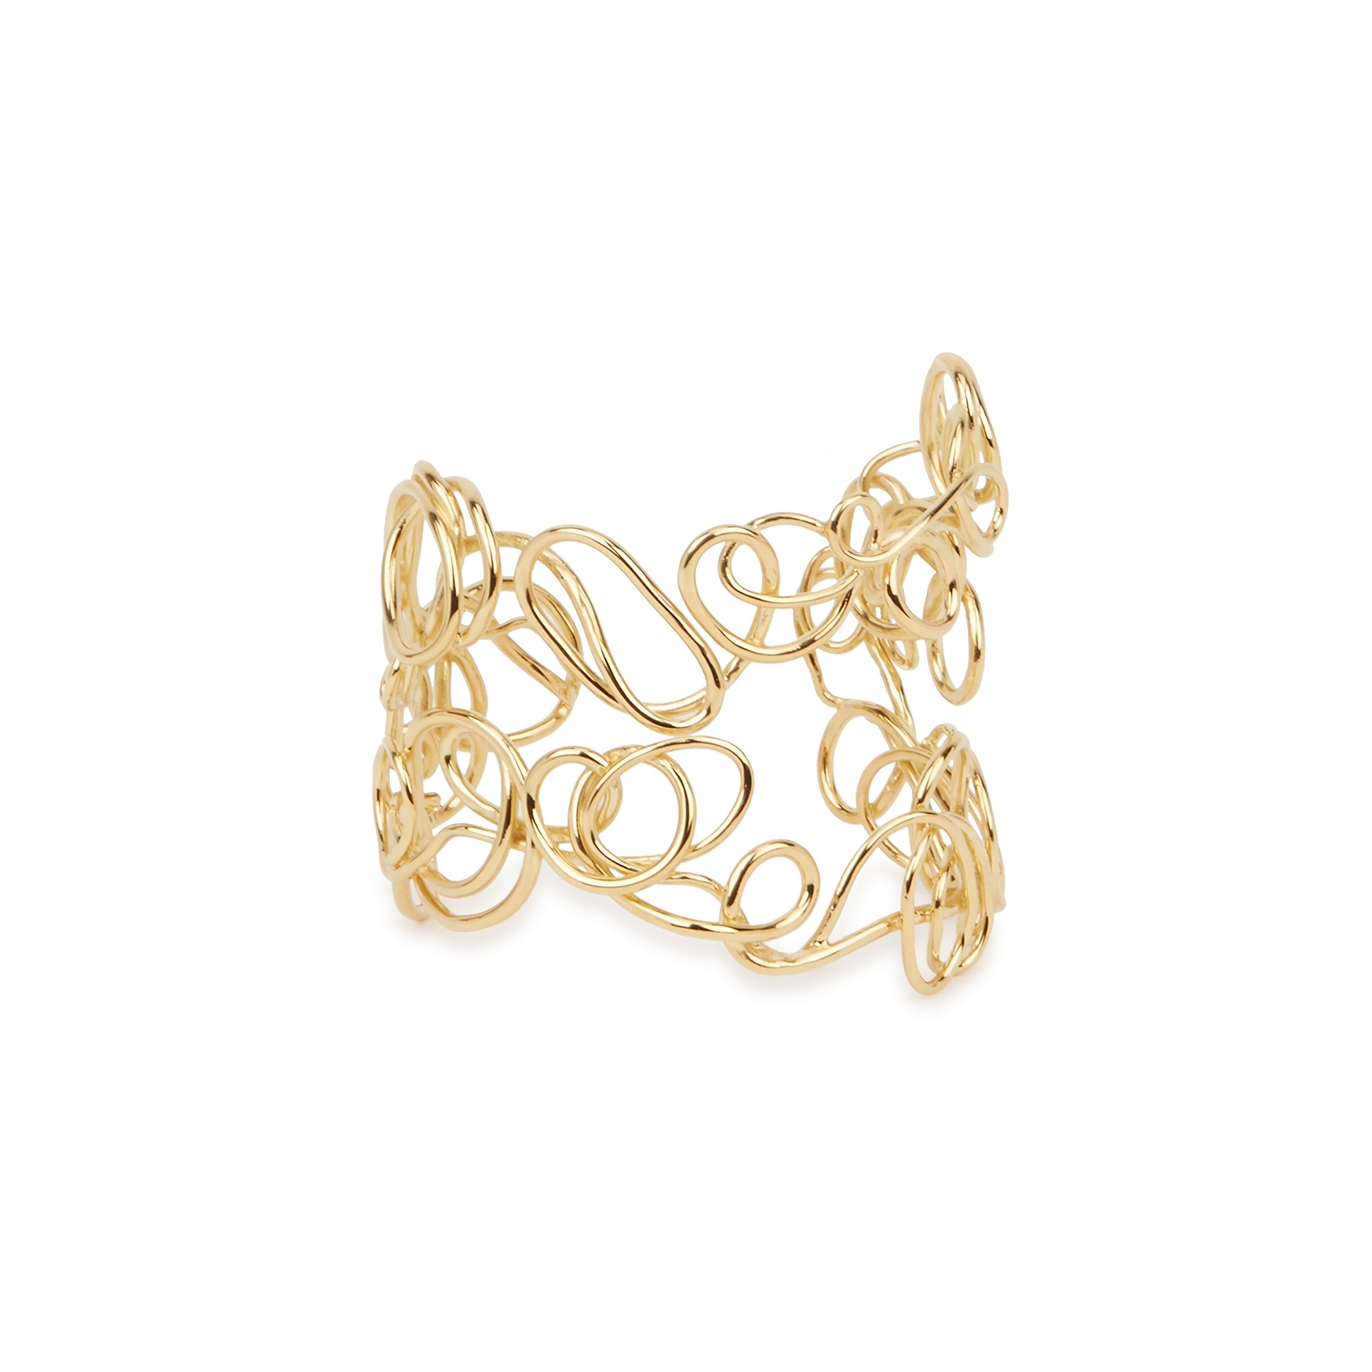 Completedworks Traces 14tk Gold Vermeil Bracelet - One Size